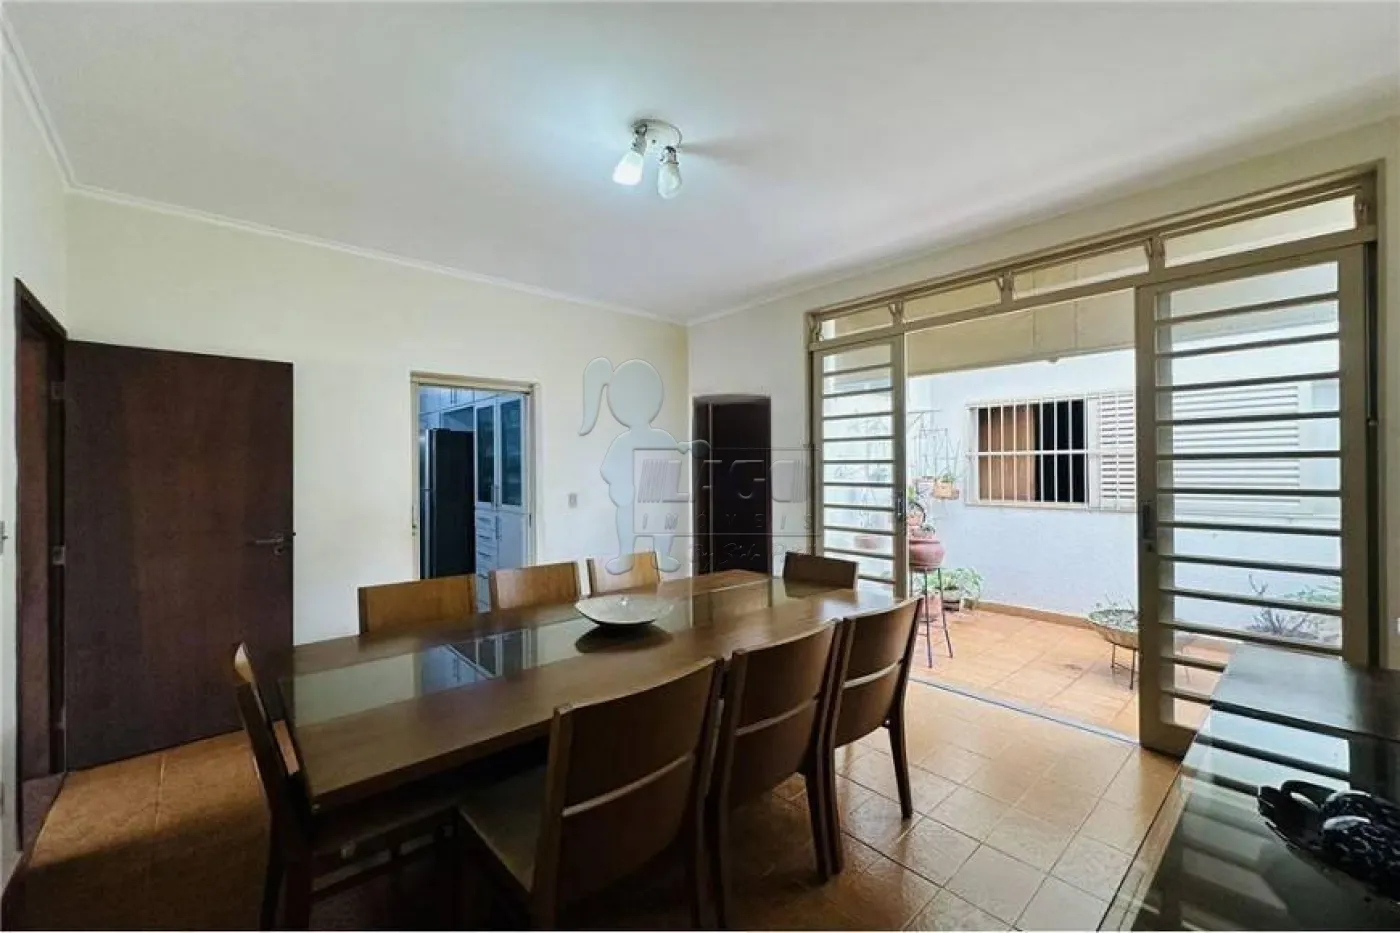 Comprar Casa / Padrão em Ribeirão Preto R$ 540.000,00 - Foto 19